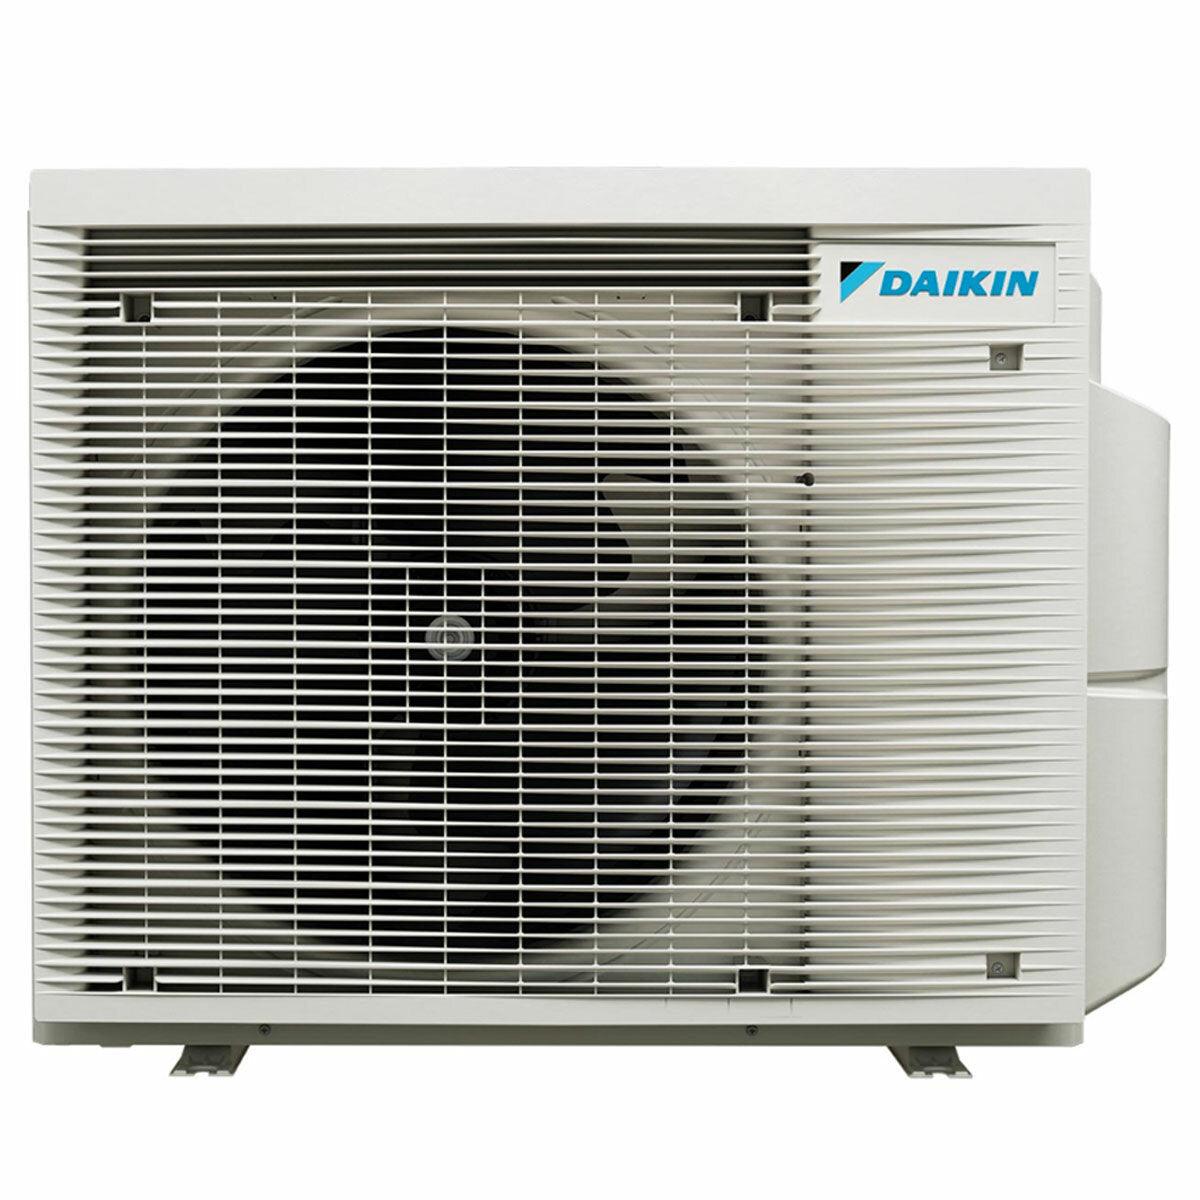 Daikin Perfera Floor climatiseur trial split 7000 + 7000 + 12000 BTU inverter A+++ wifi unité extérieure 5,2 kW